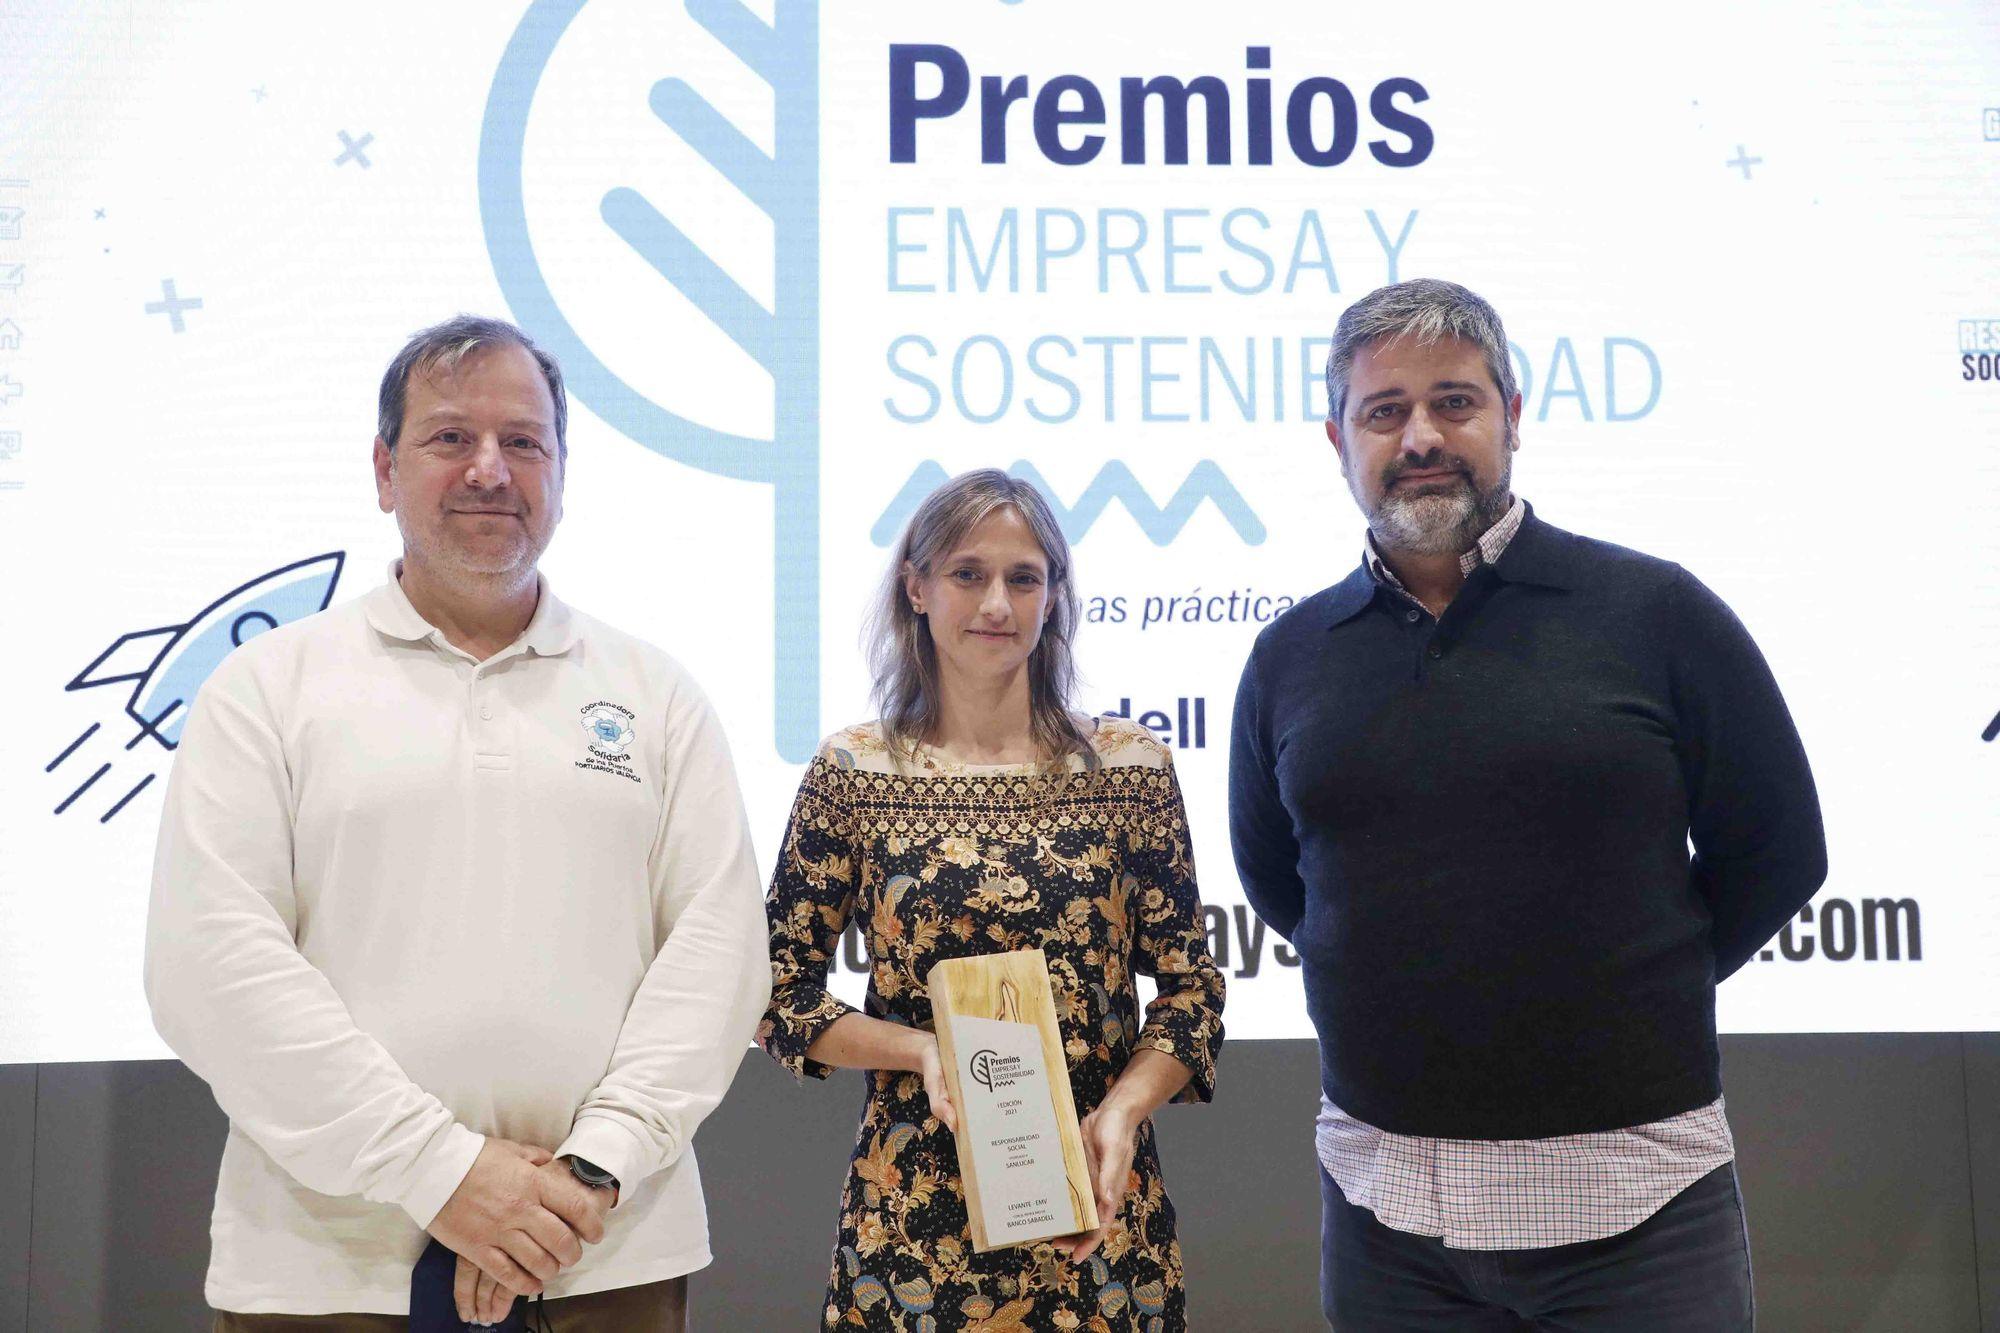 PREMIOS | Premios Empresa y sostenibilidad